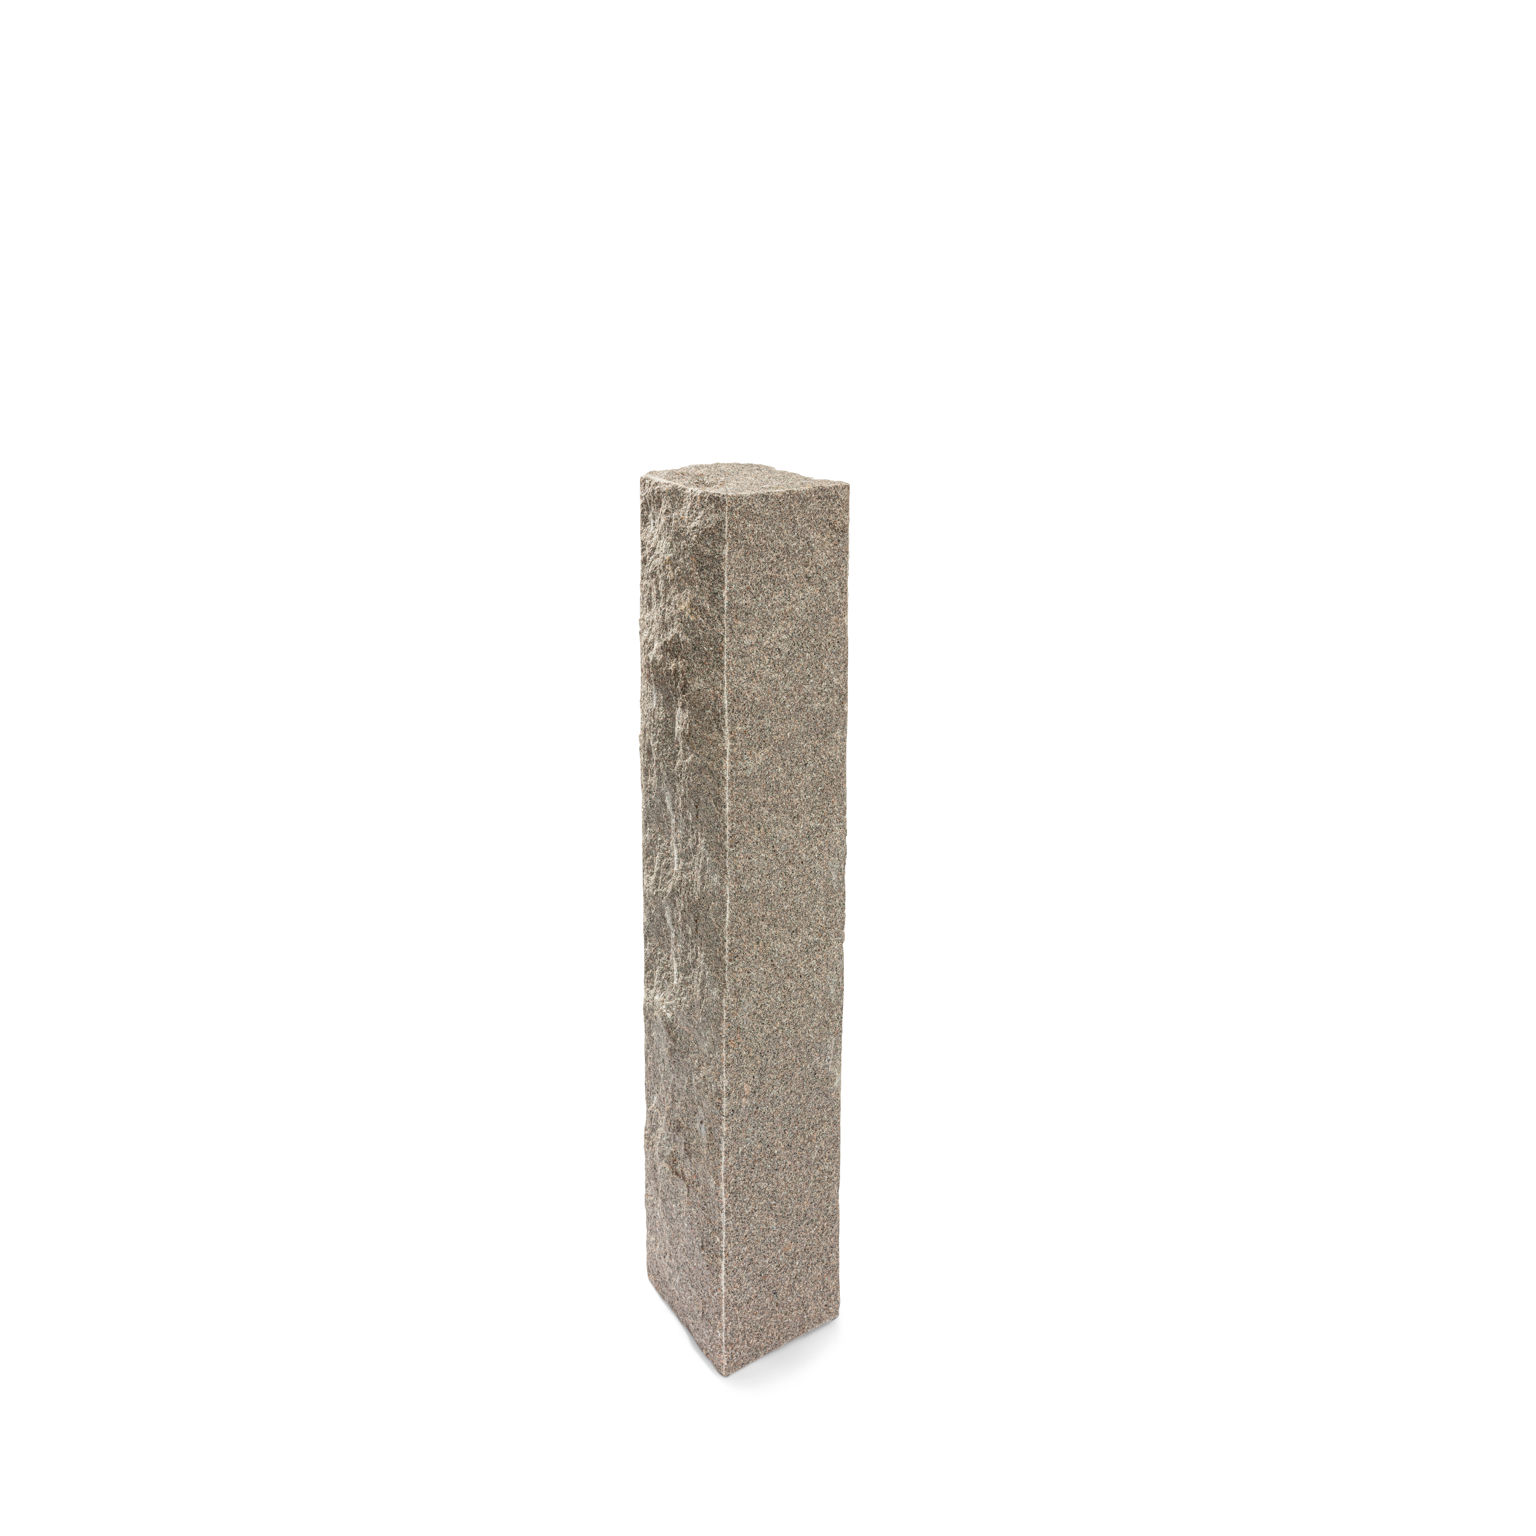 Produktbild på en stolpe i Bohus grå;granit. Stolpen har ett råkilat utförande och mäter 1300x250x250.